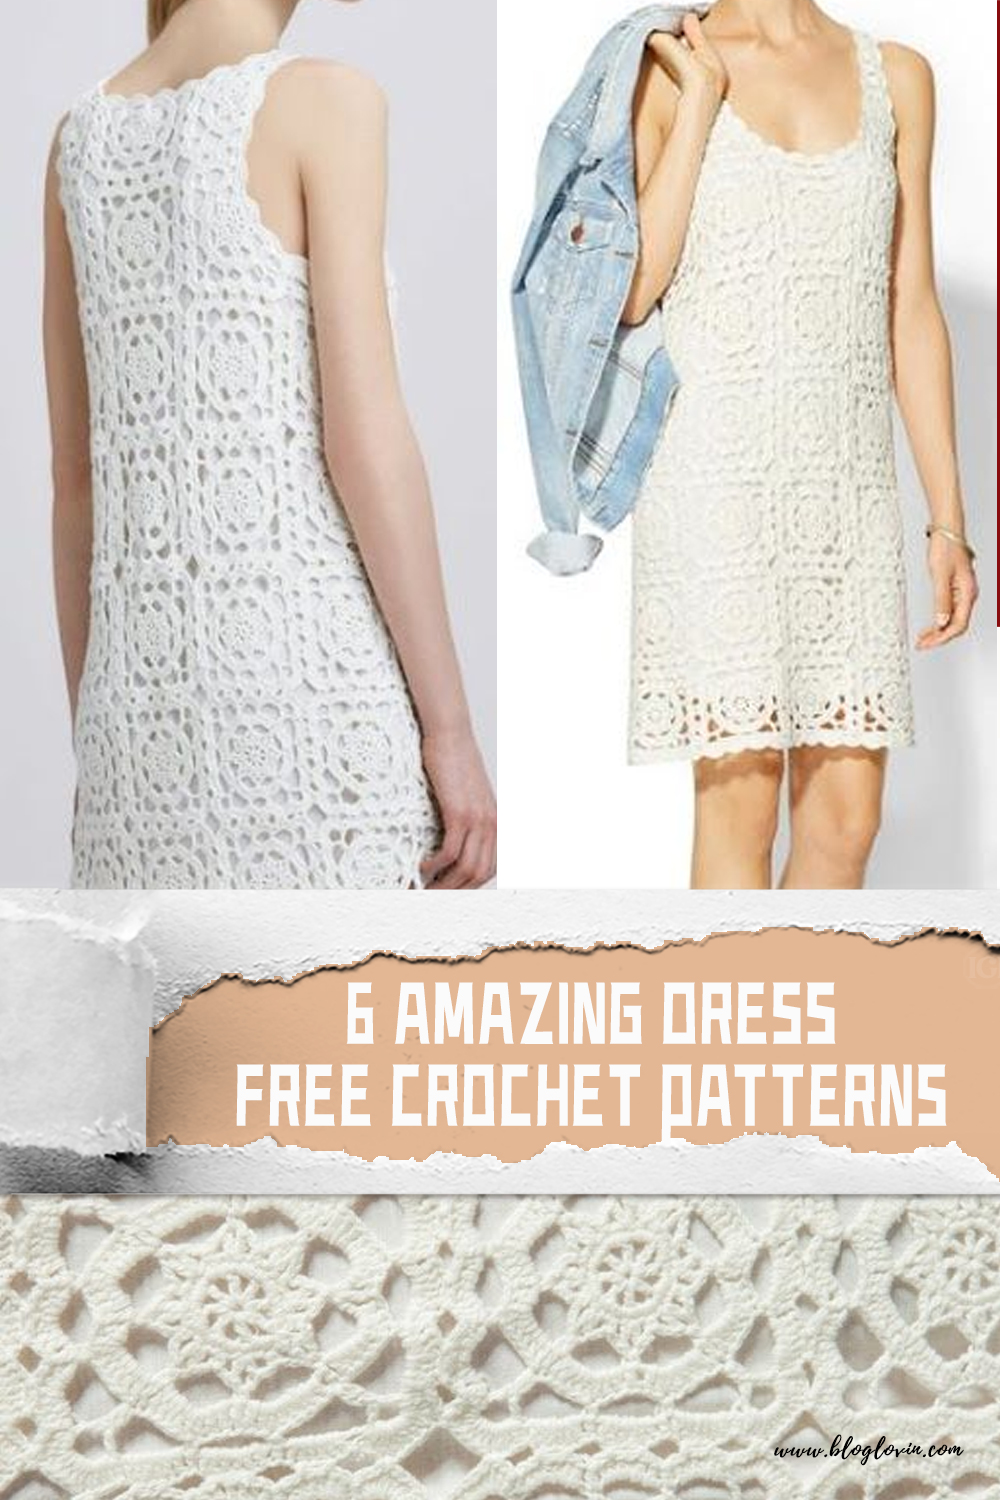 6 Amazing Dress FREE Crochet Patterns